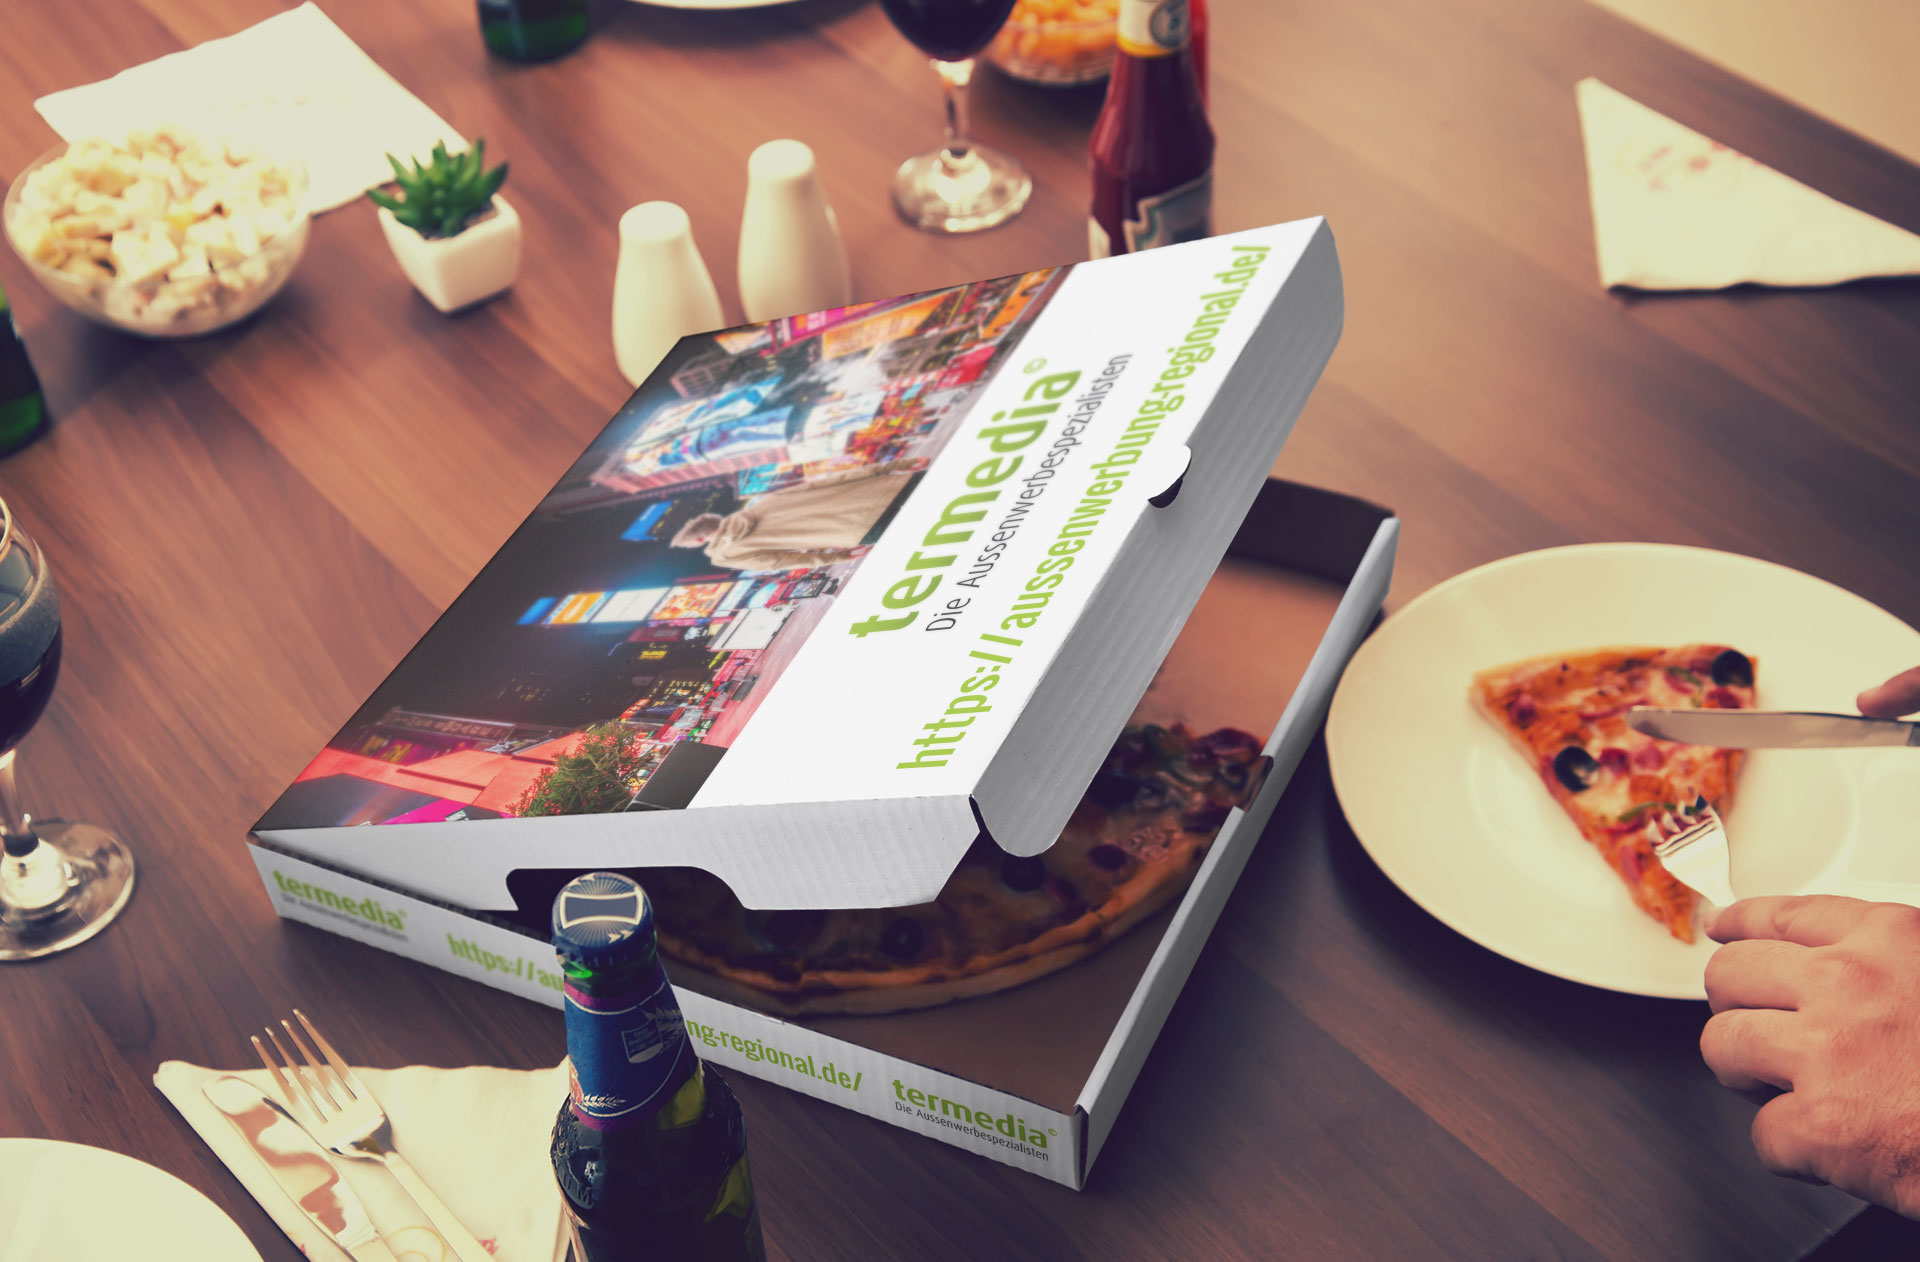 Werbung auf Pizzakarton - ein Genuss für alle Sinne